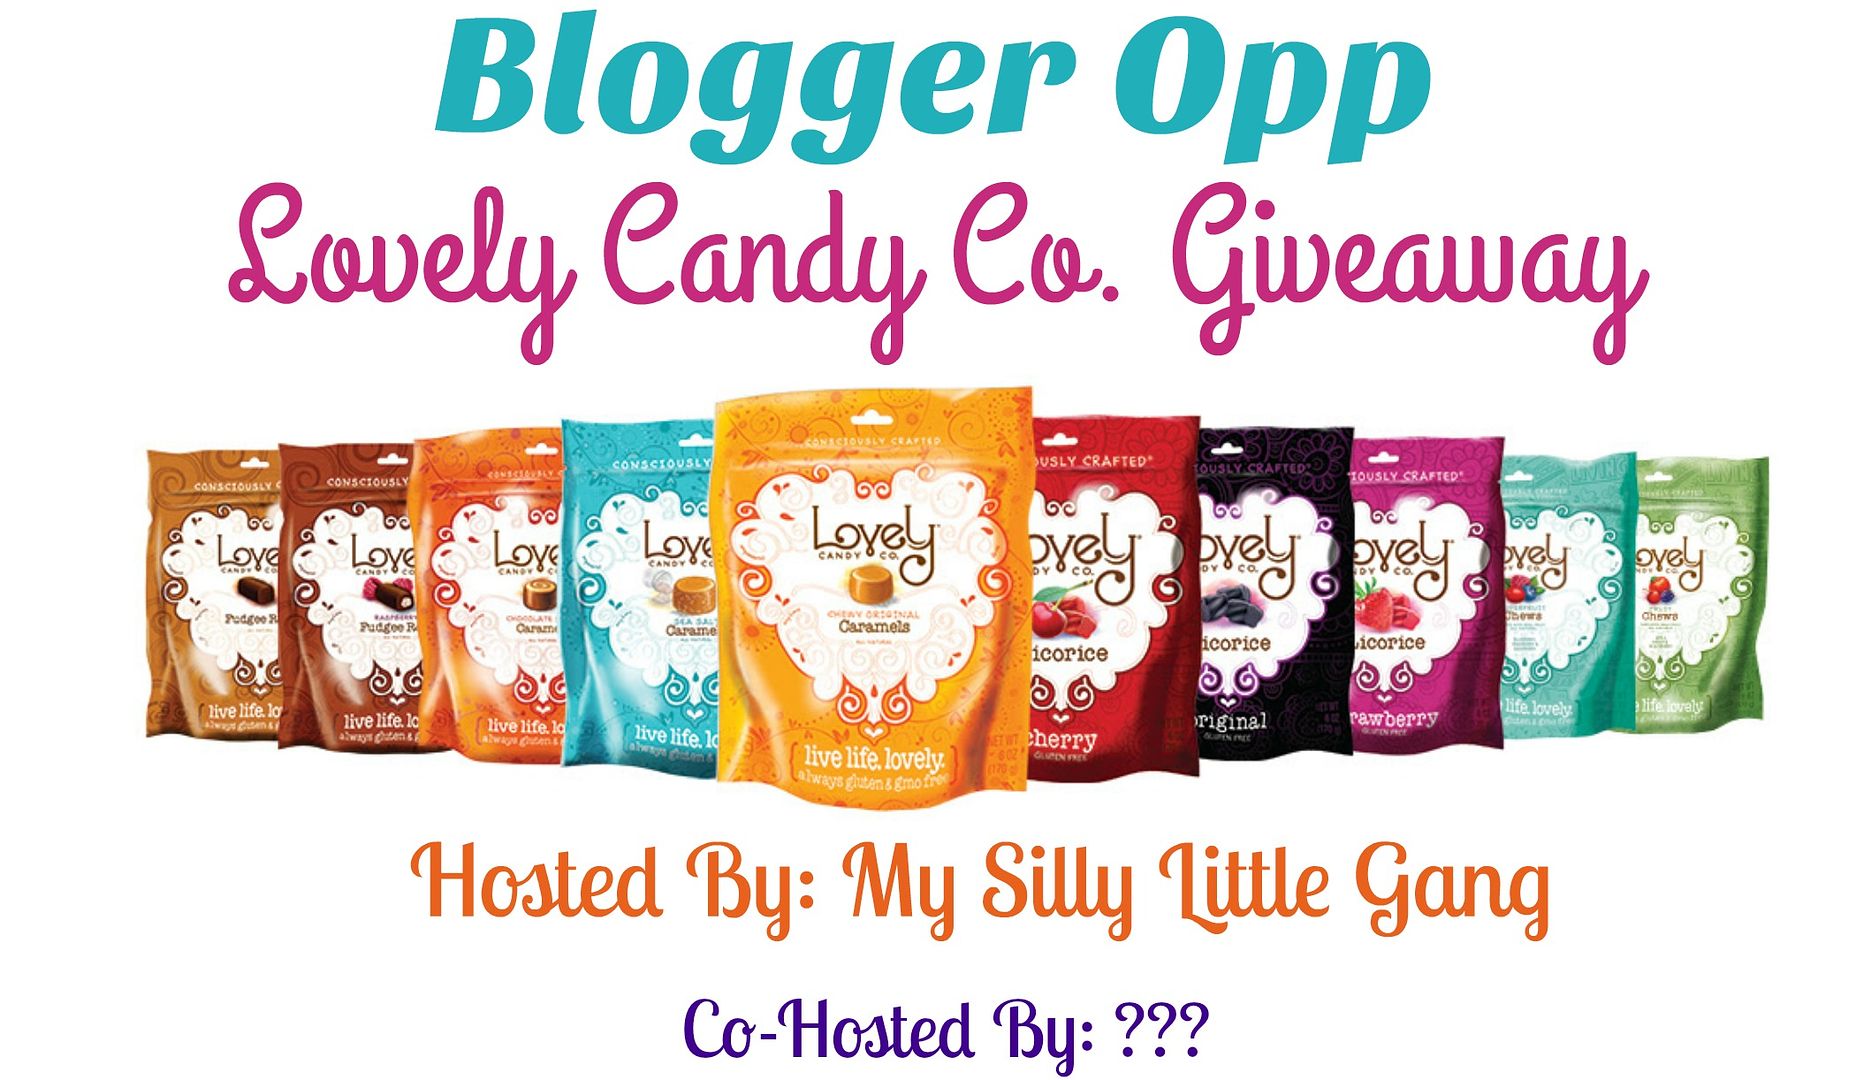 lovely candy co blogger opp